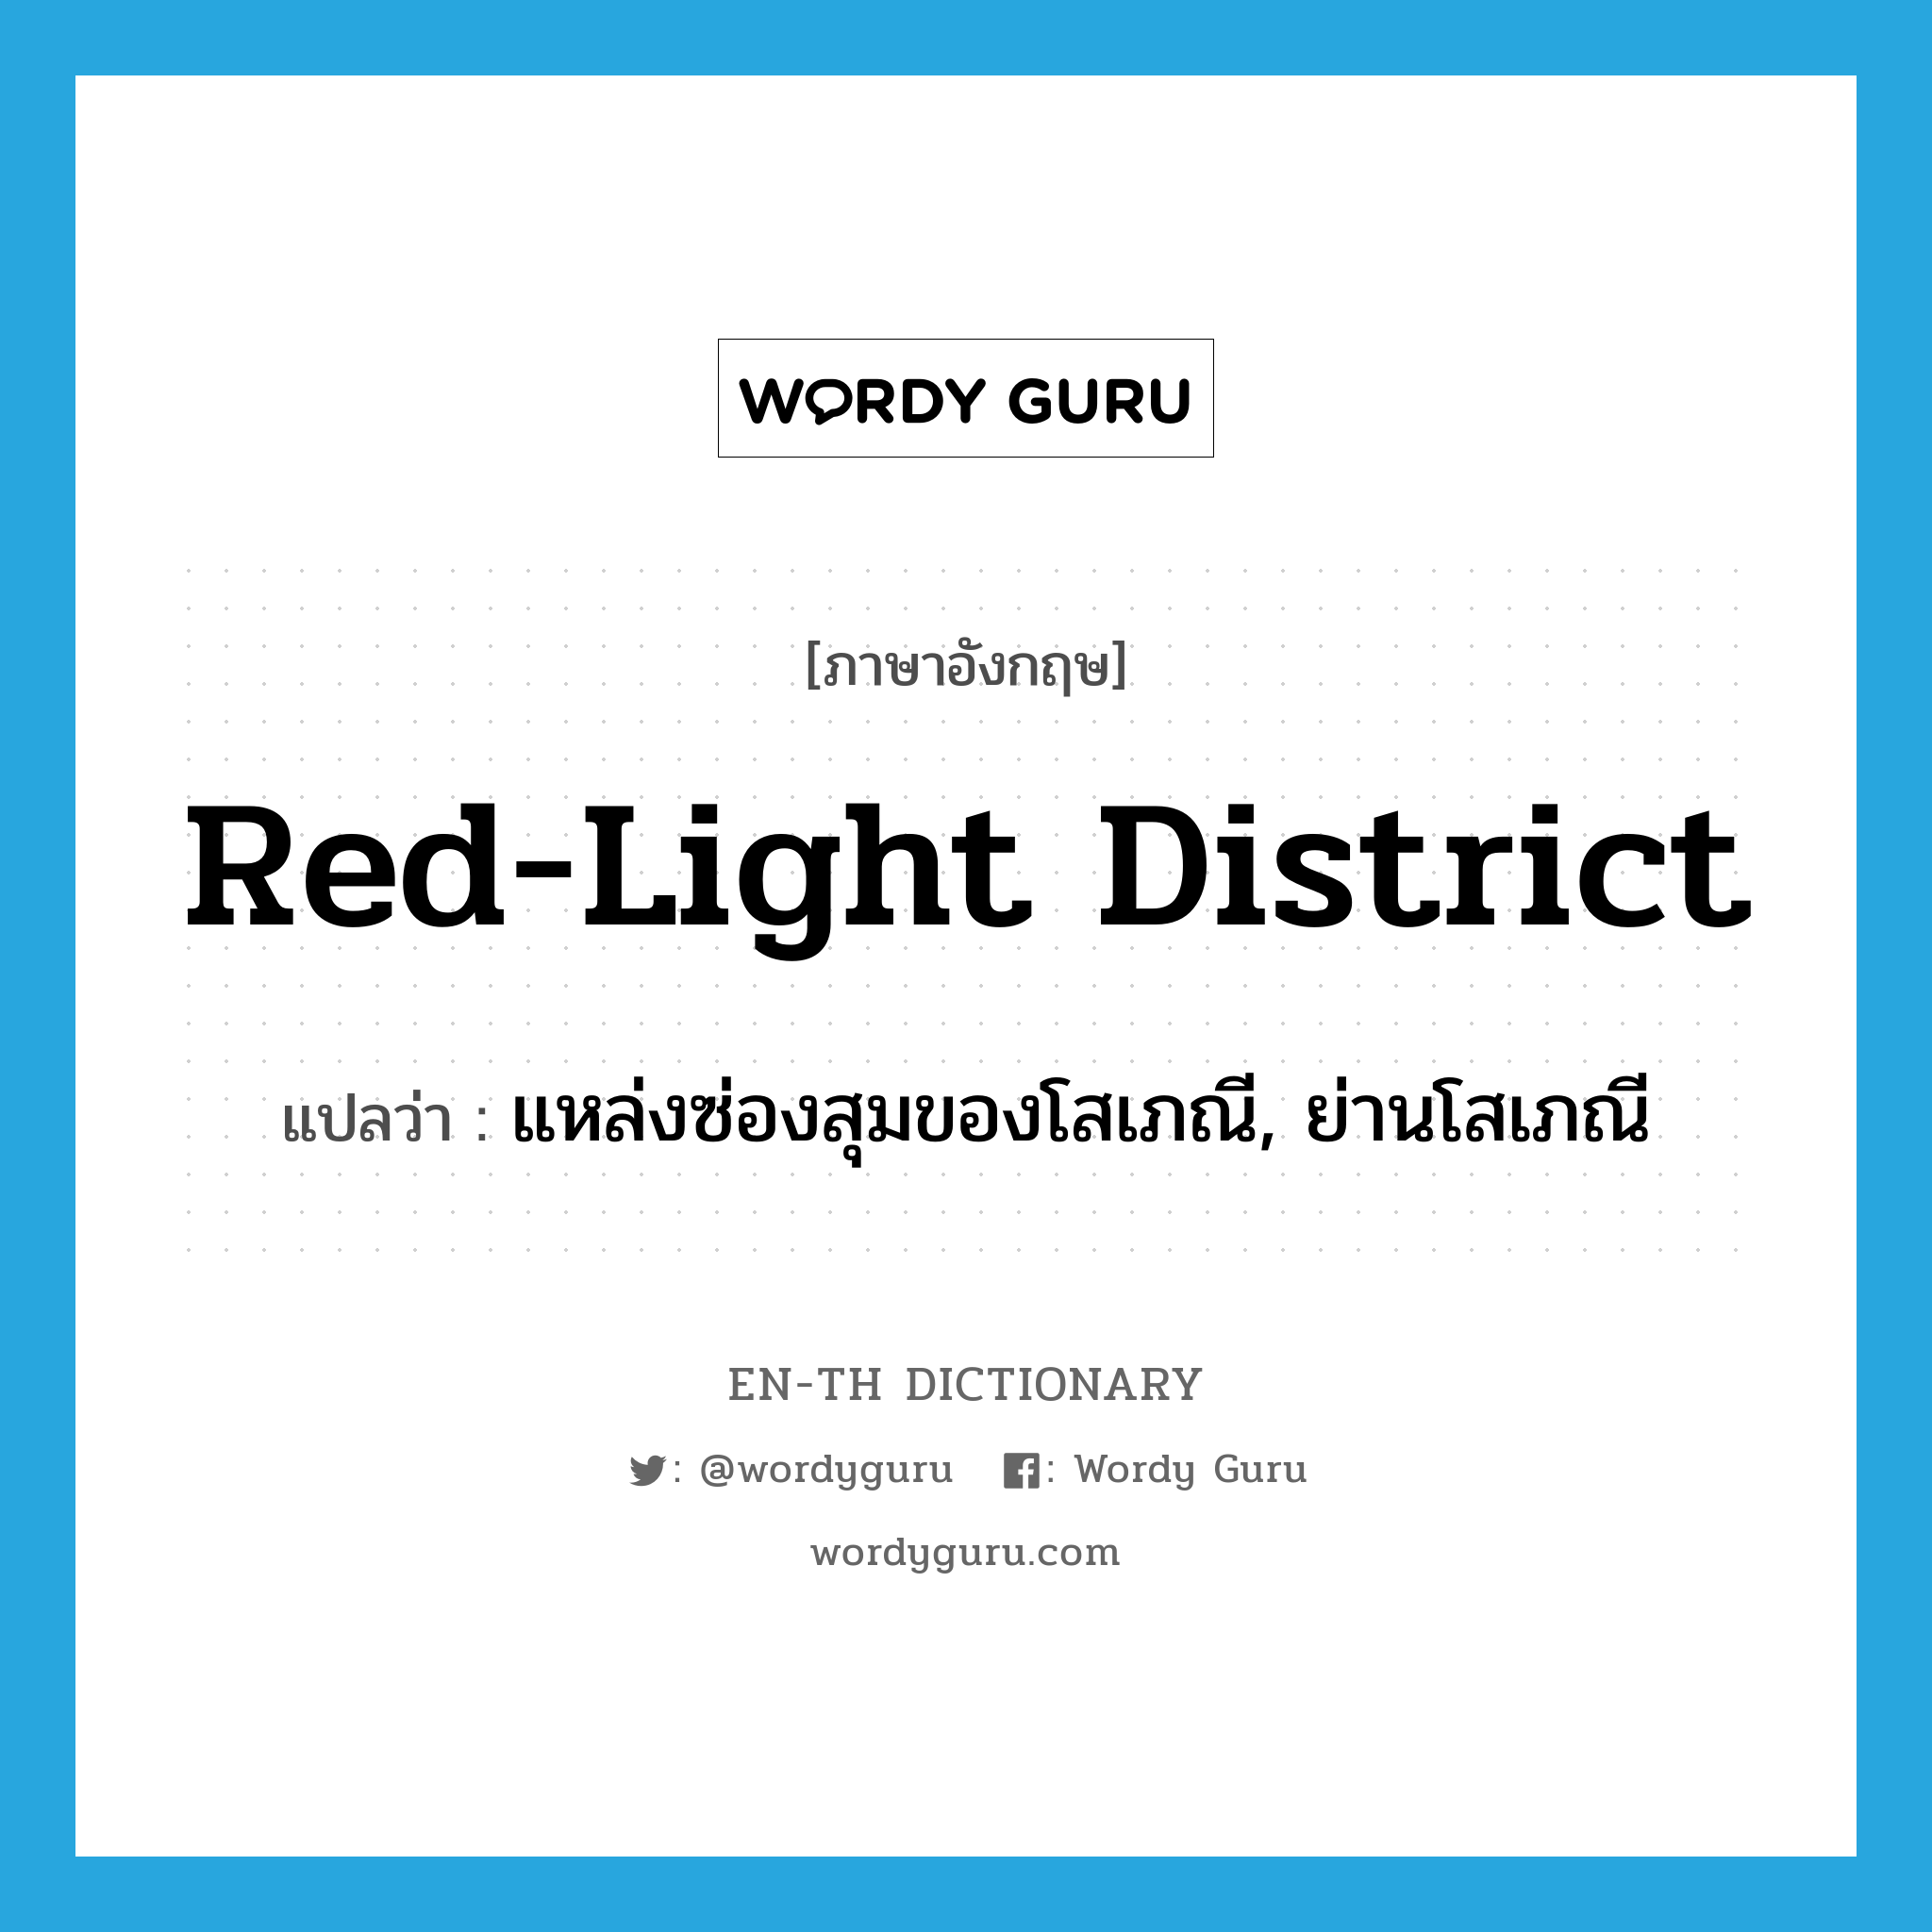 red-light district แปลว่า?, คำศัพท์ภาษาอังกฤษ red-light district แปลว่า แหล่งซ่องสุมของโสเภณี, ย่านโสเภณี ประเภท N หมวด N